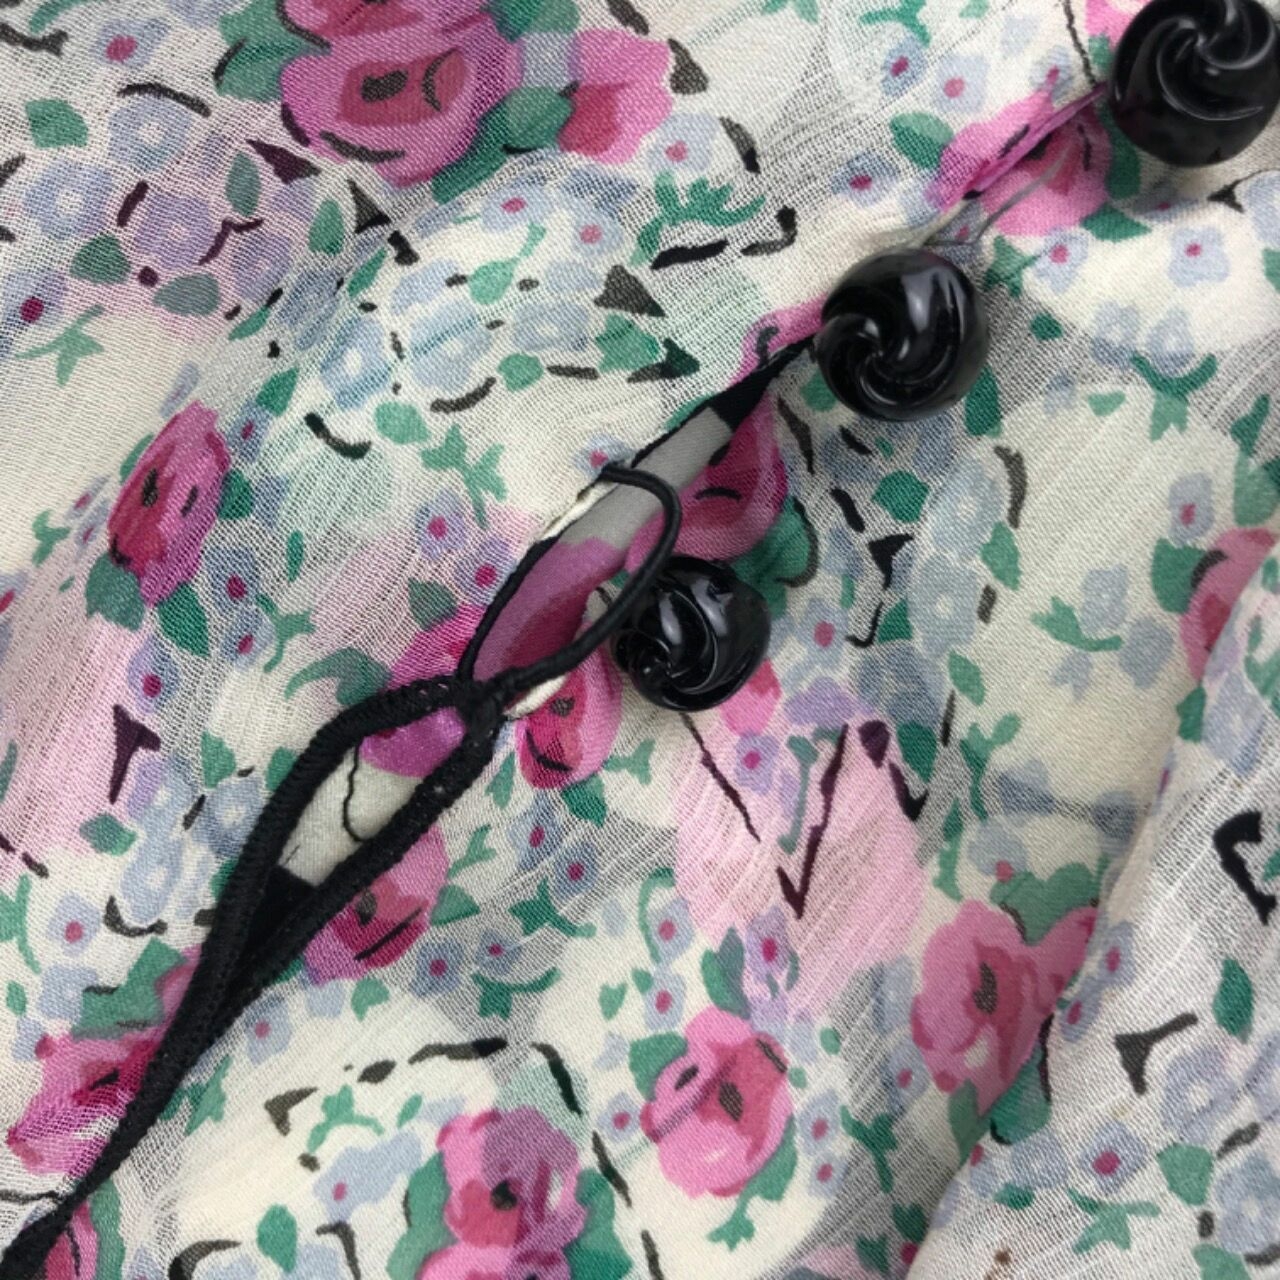 Anna Sui Multi Floral Midi Dress